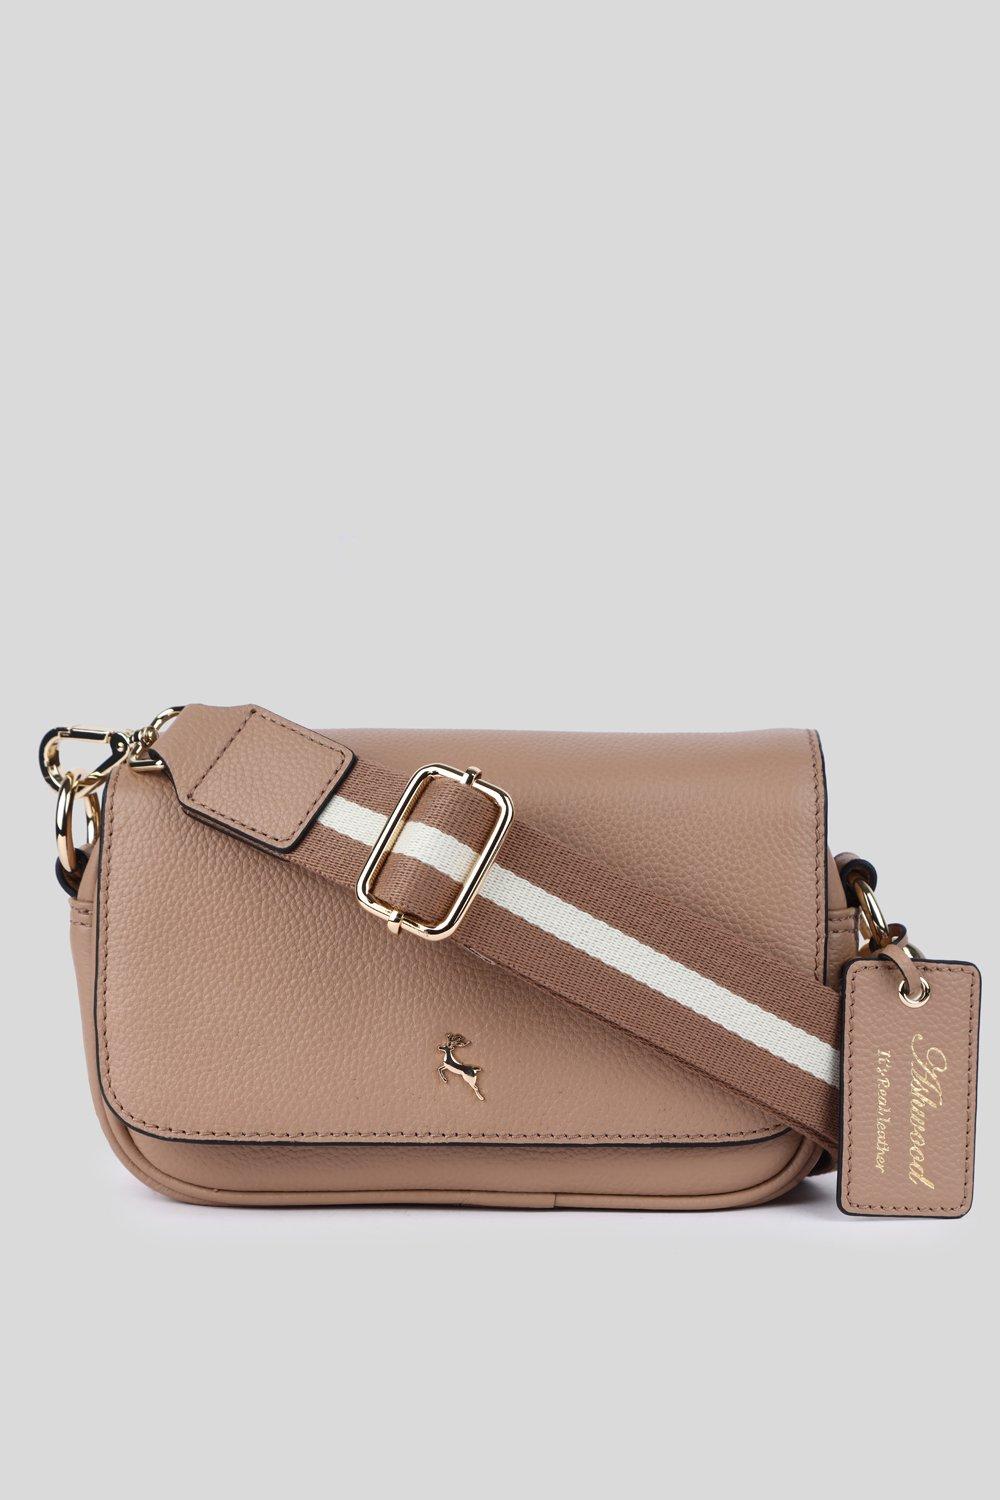 Floozie bag from faith- debenhams | Bags, Coach swagger bag, Handbag